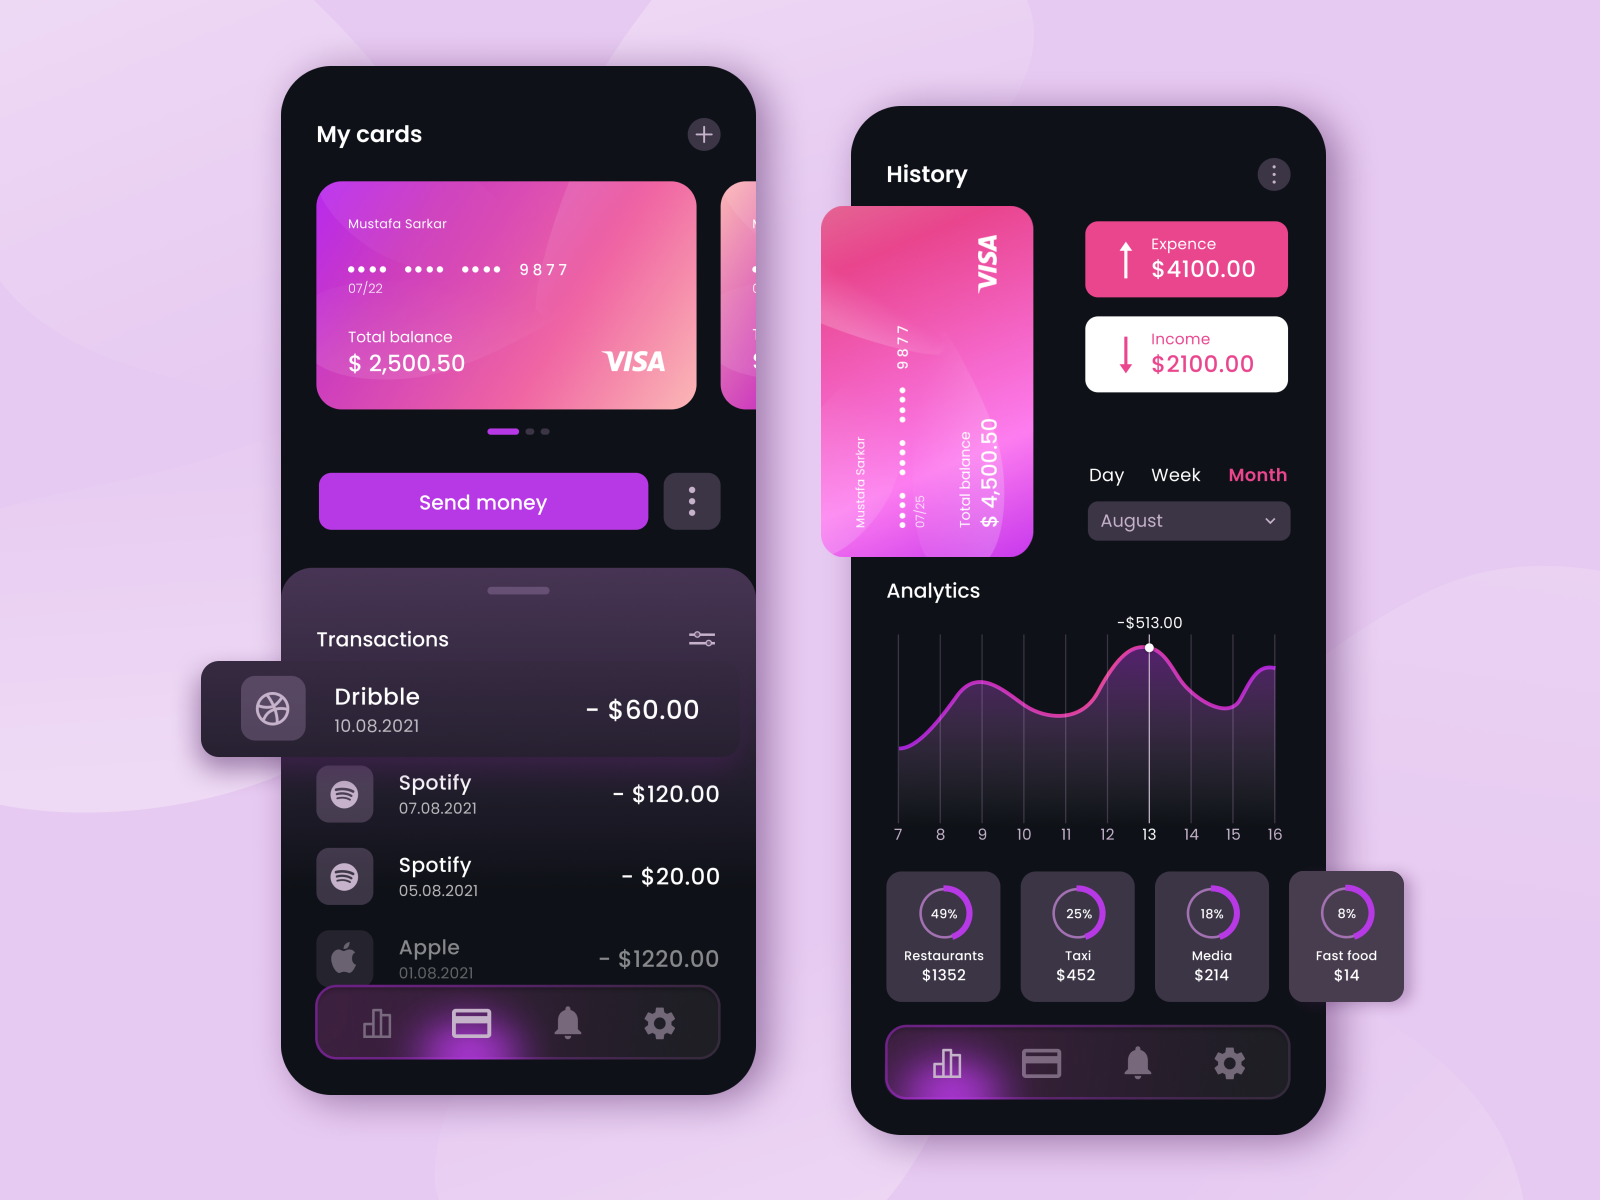 Digital Wallet App